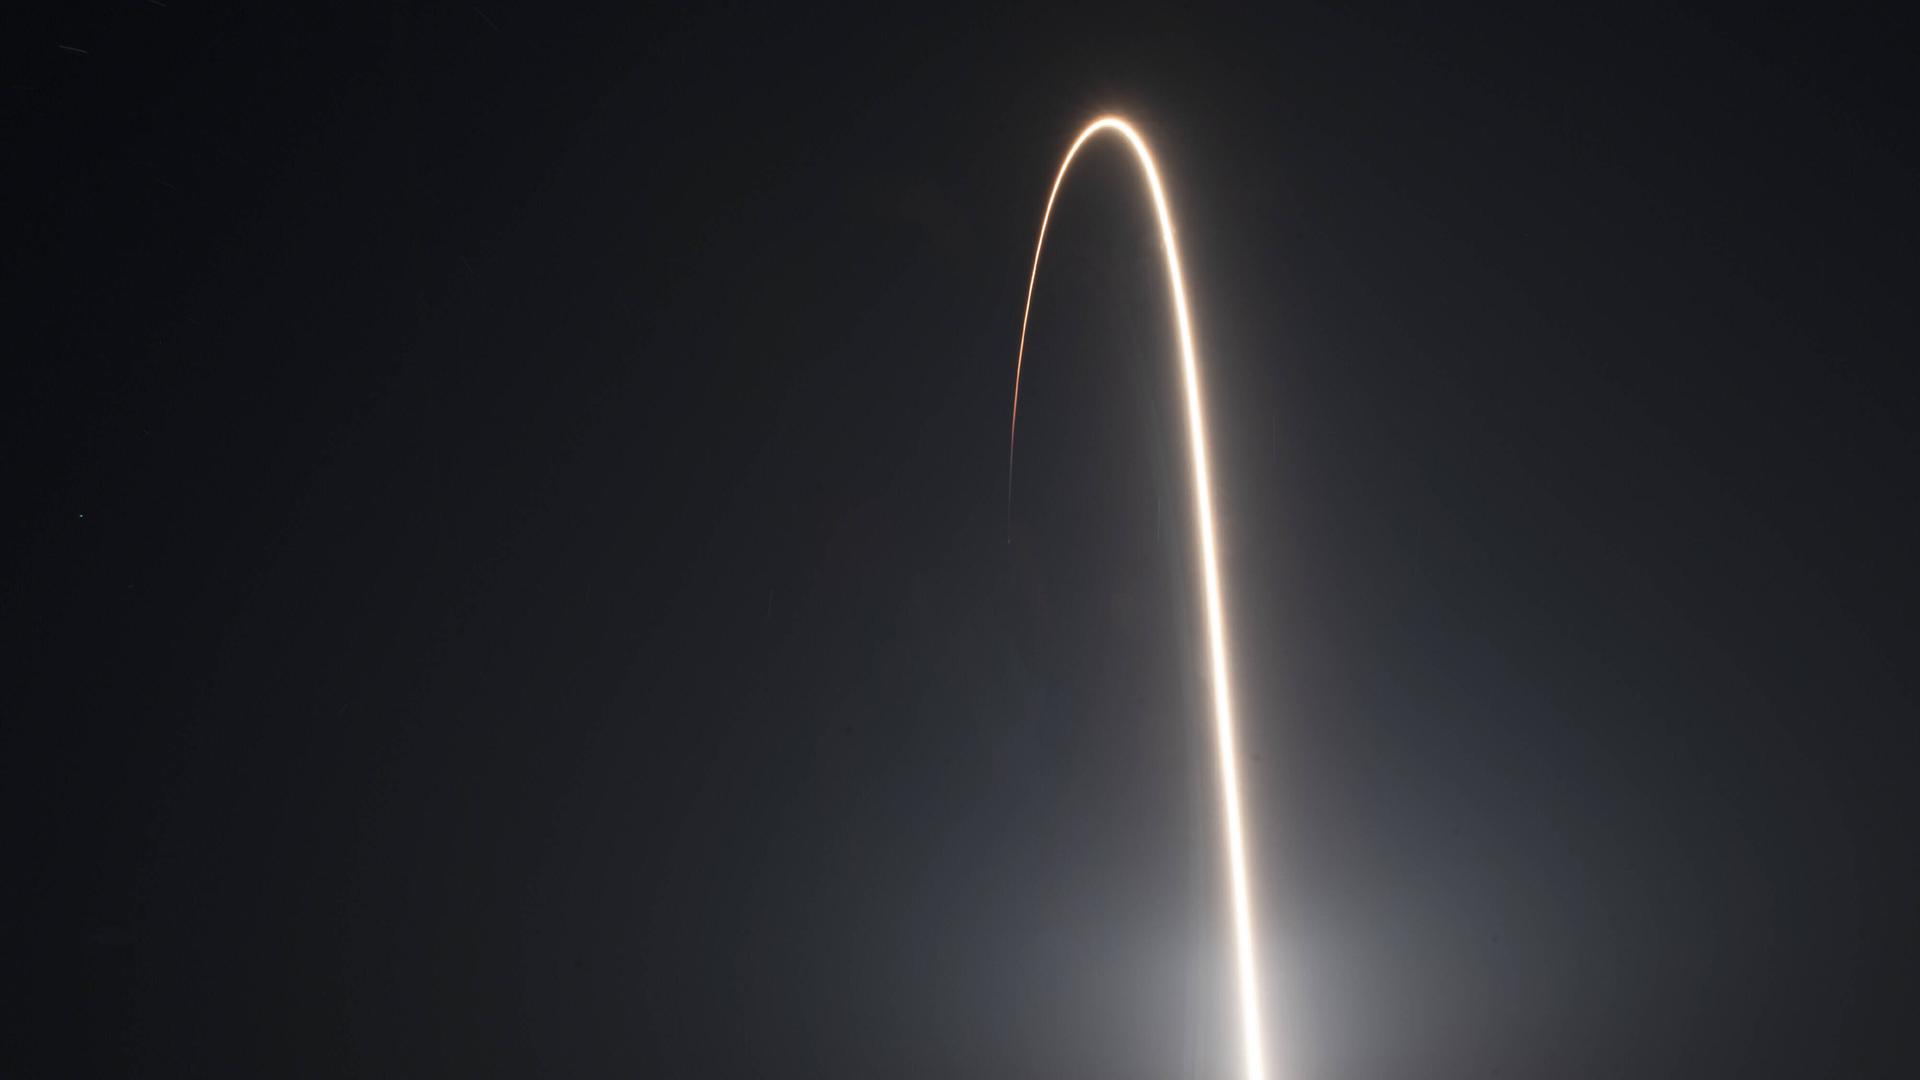 Langzeitbelichtung eines Raketenstarts, bei dem die Rakete einen langen, gebogenen Schweif in der Form der Flugbahn hinterlässt.